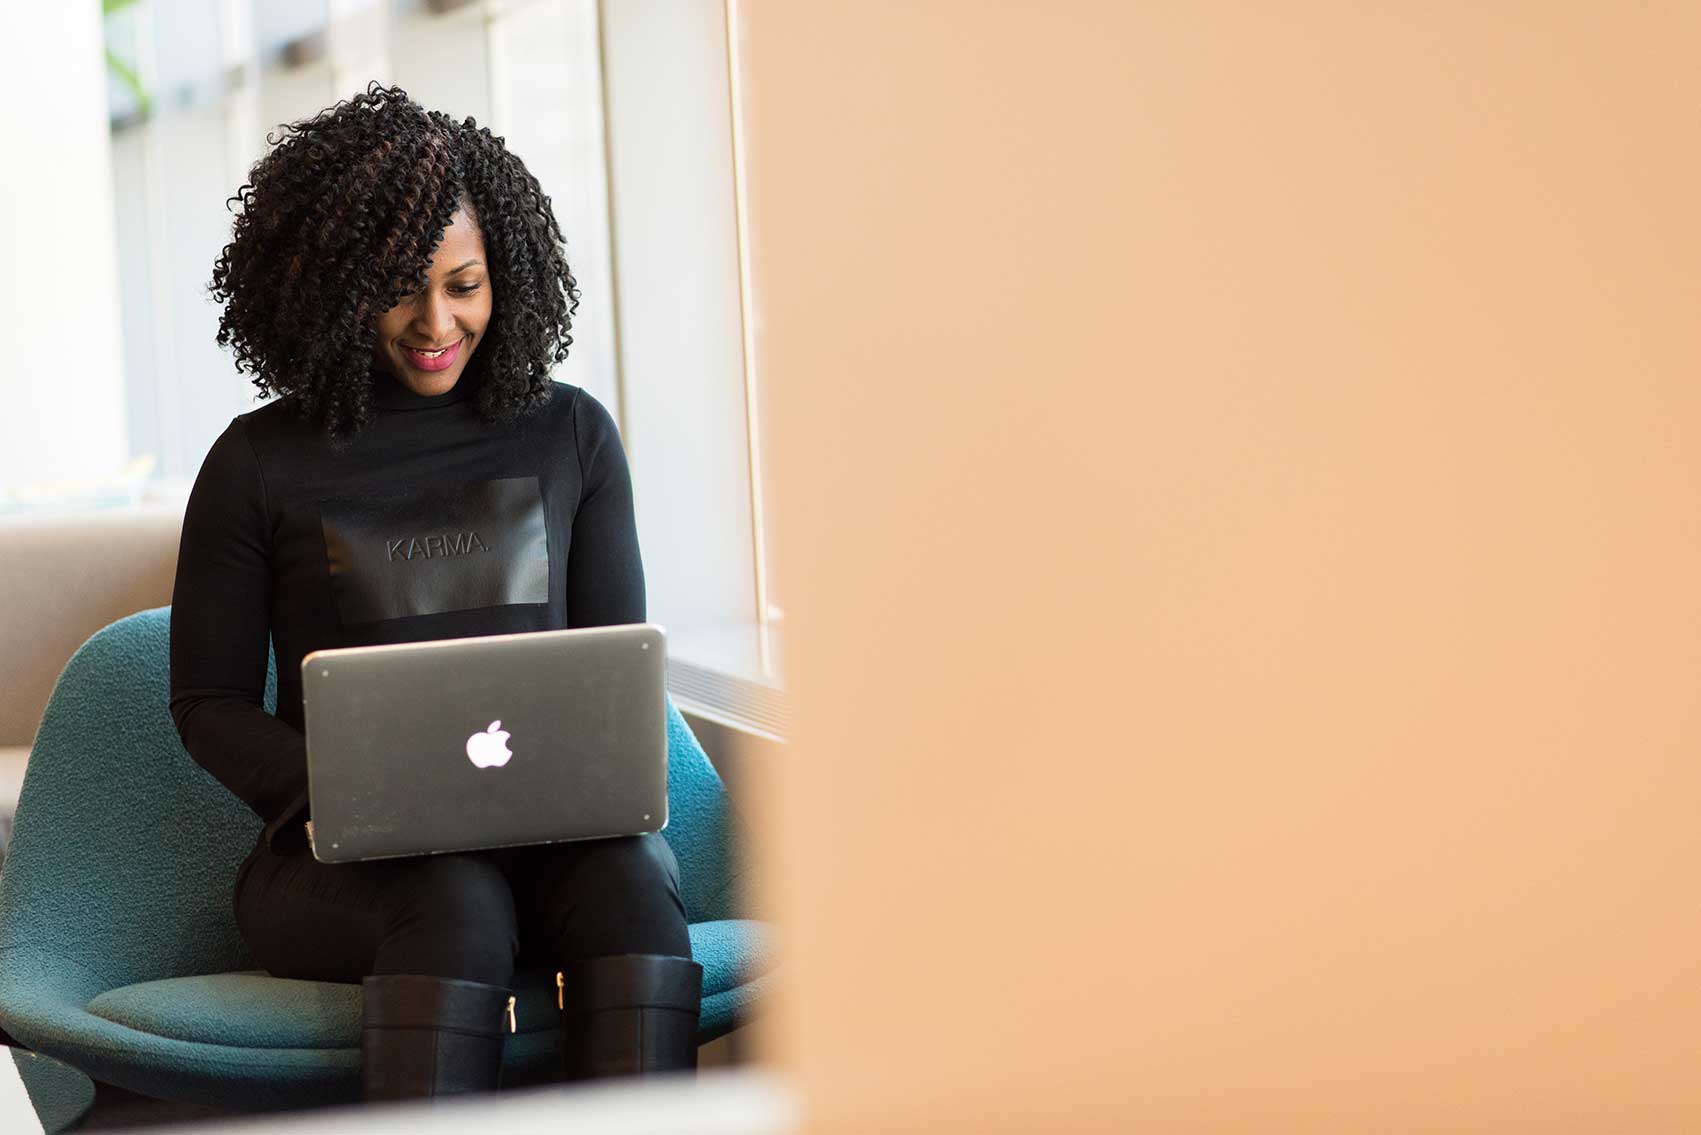 zu sehen ist eine Frau, die lächelnd an einem Macbook arbeitet. Das Thema sind die Vorteile einer Schwachstellenanalyse der IT. Bild: Pexels/Christina Morillo